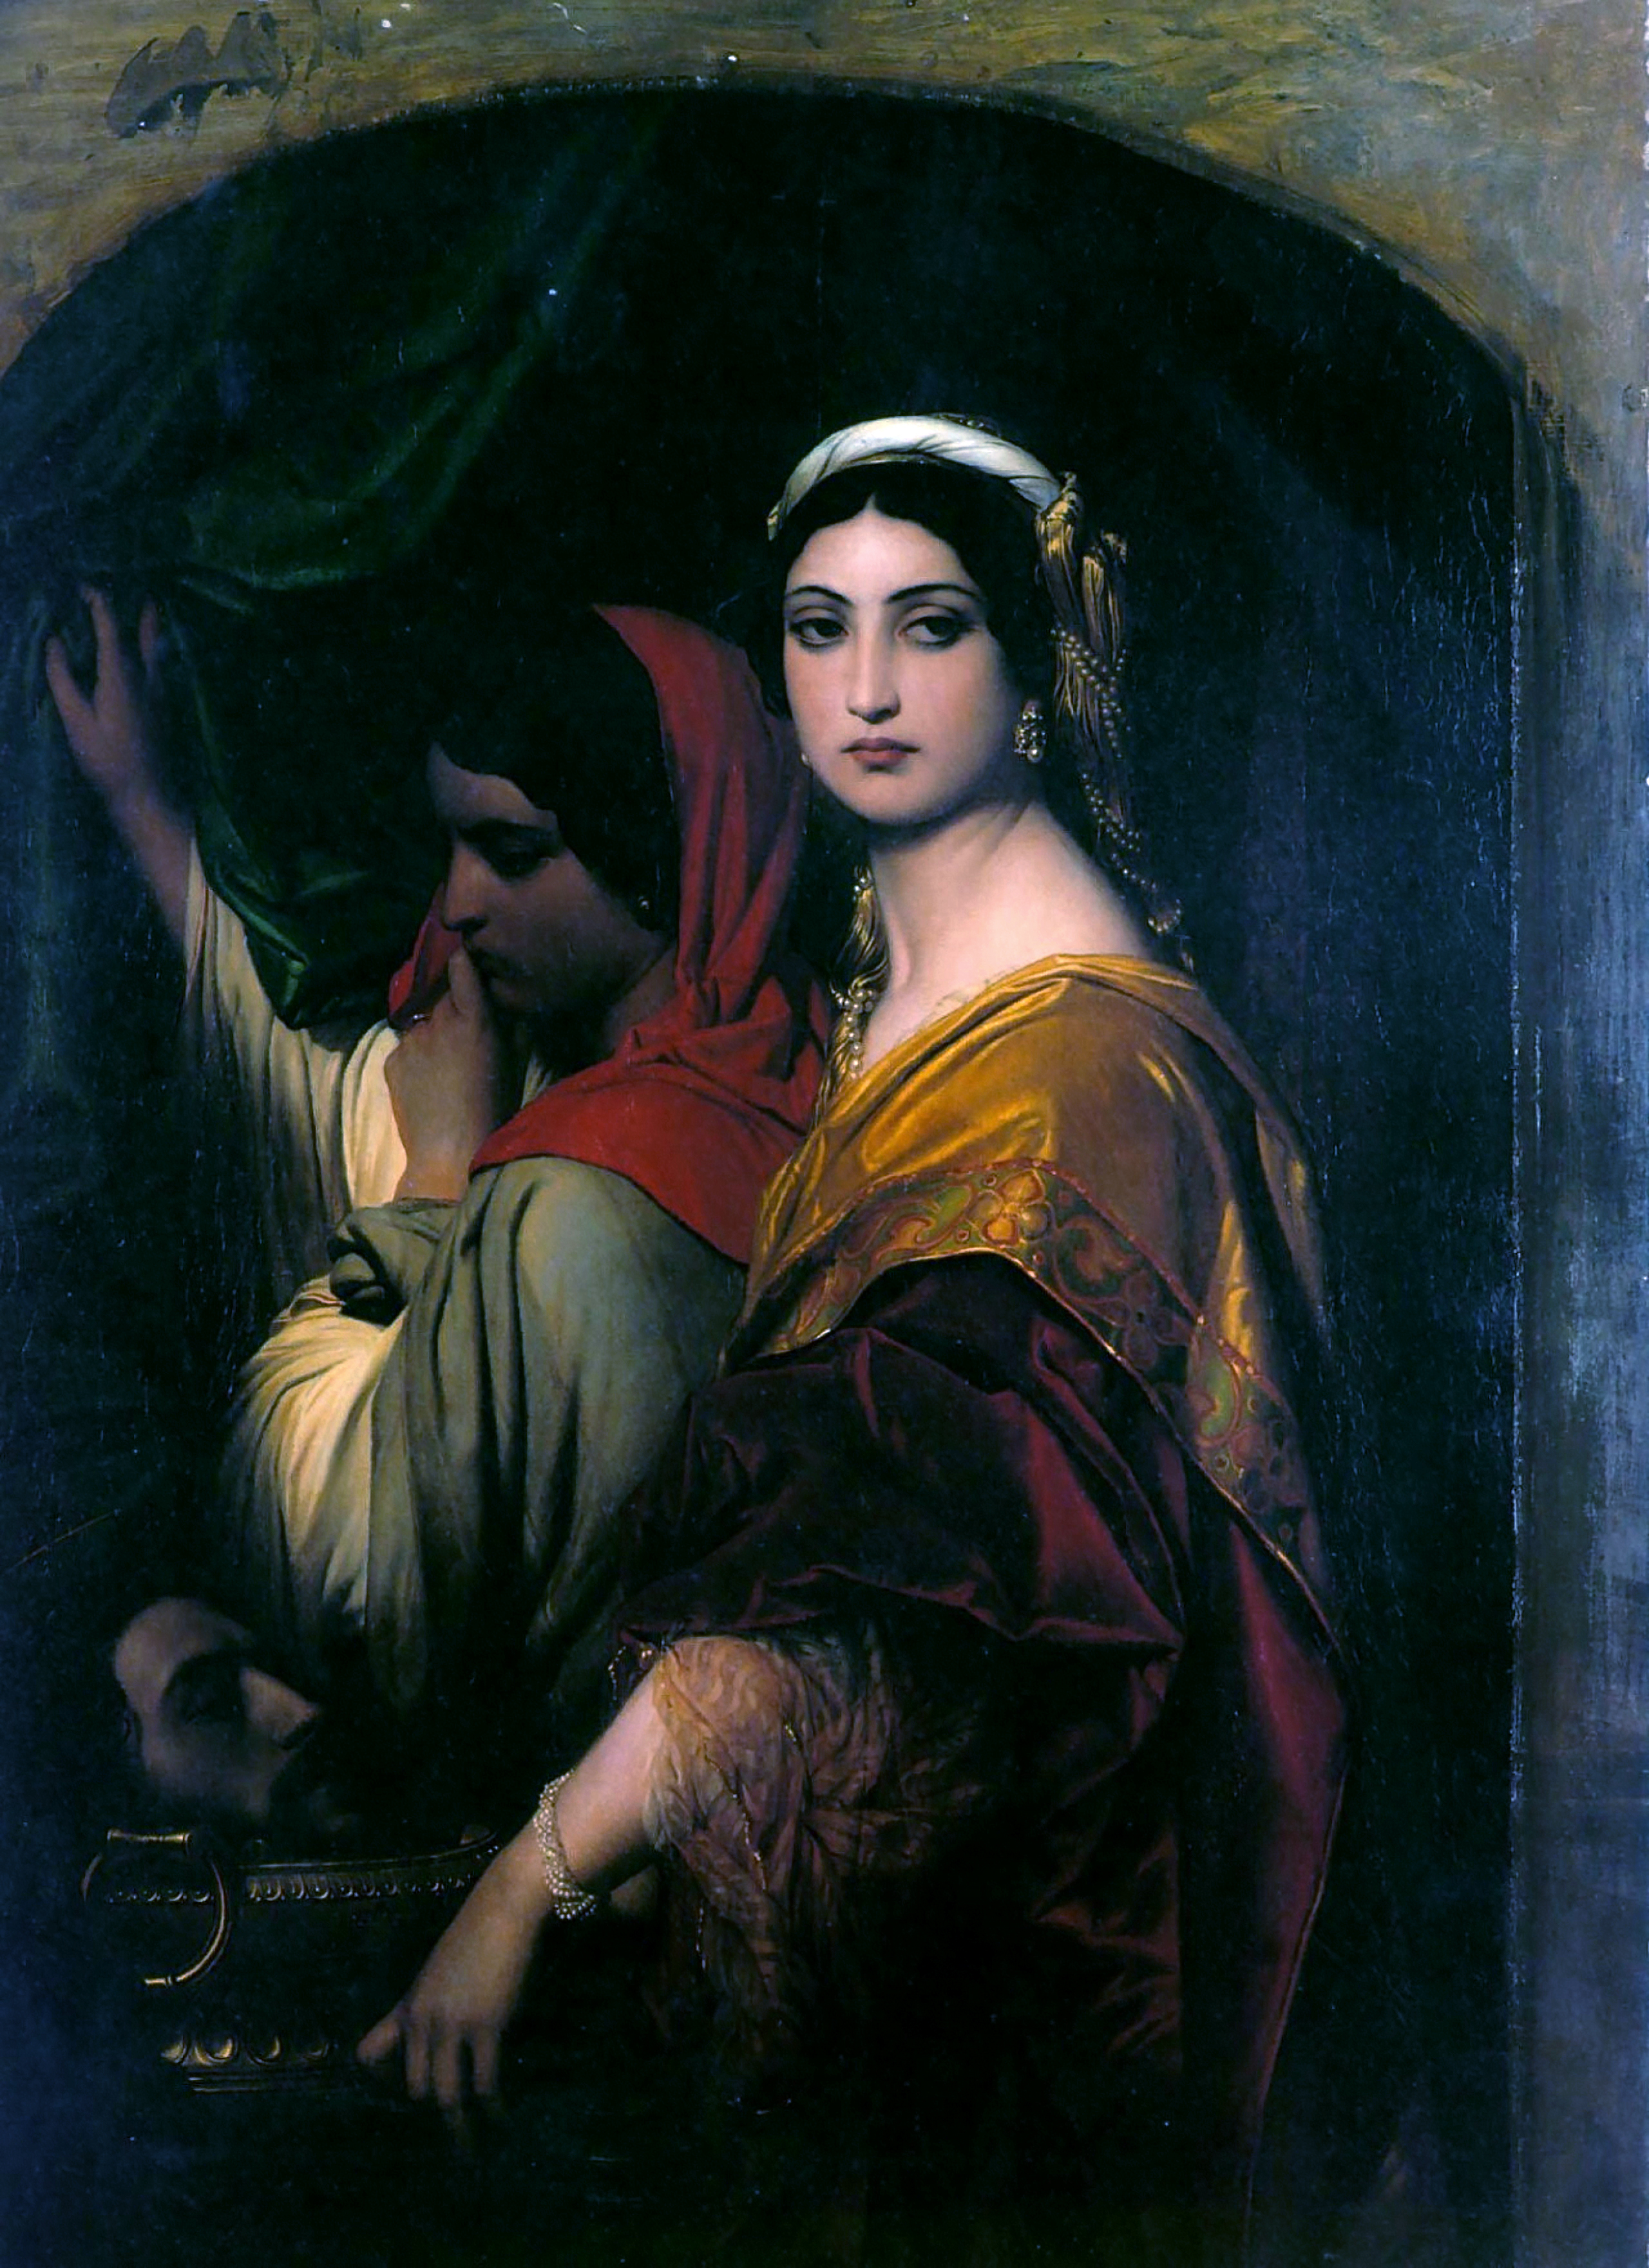 Herodías by Paul Delaroche - 1843 Wallraf–Richartz Museum